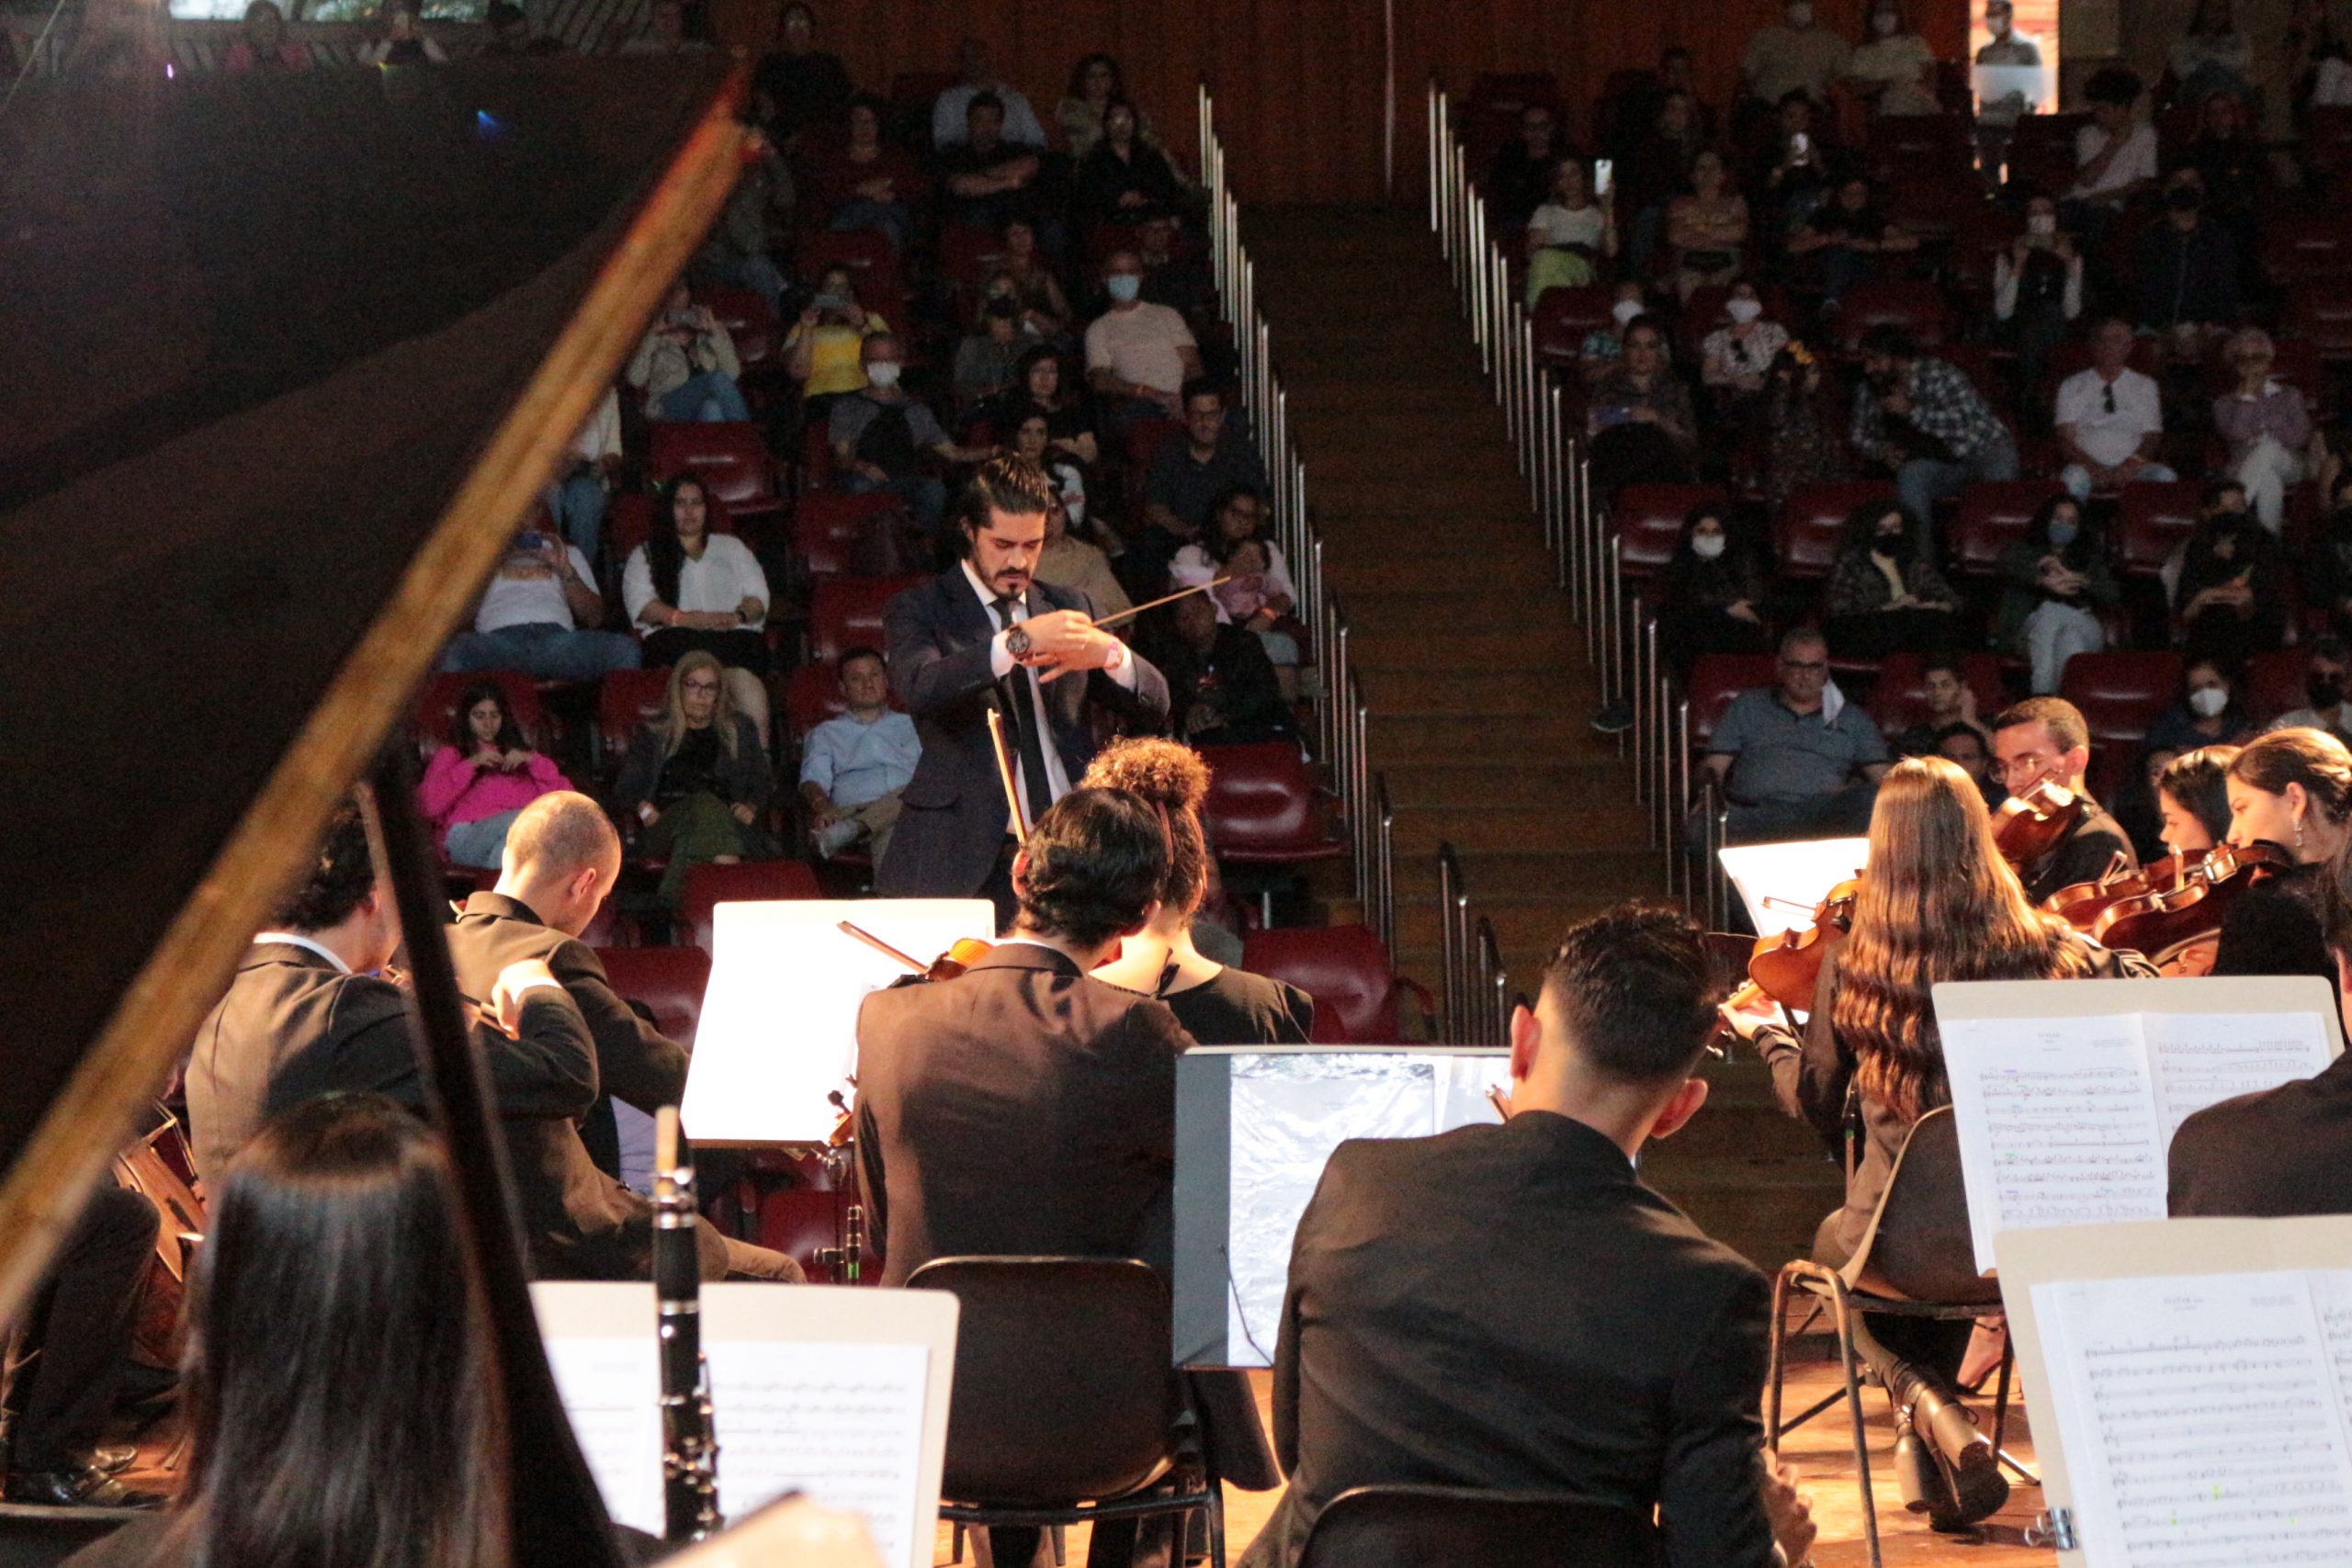 A imagem mostra um maestro regendo uma orquestra. Os músicos estão de costas e o maestro está de frente para eles. Ao fundo, algumas pessoas estão sentadas em poltronas vermelhas assistindo ao concerto.